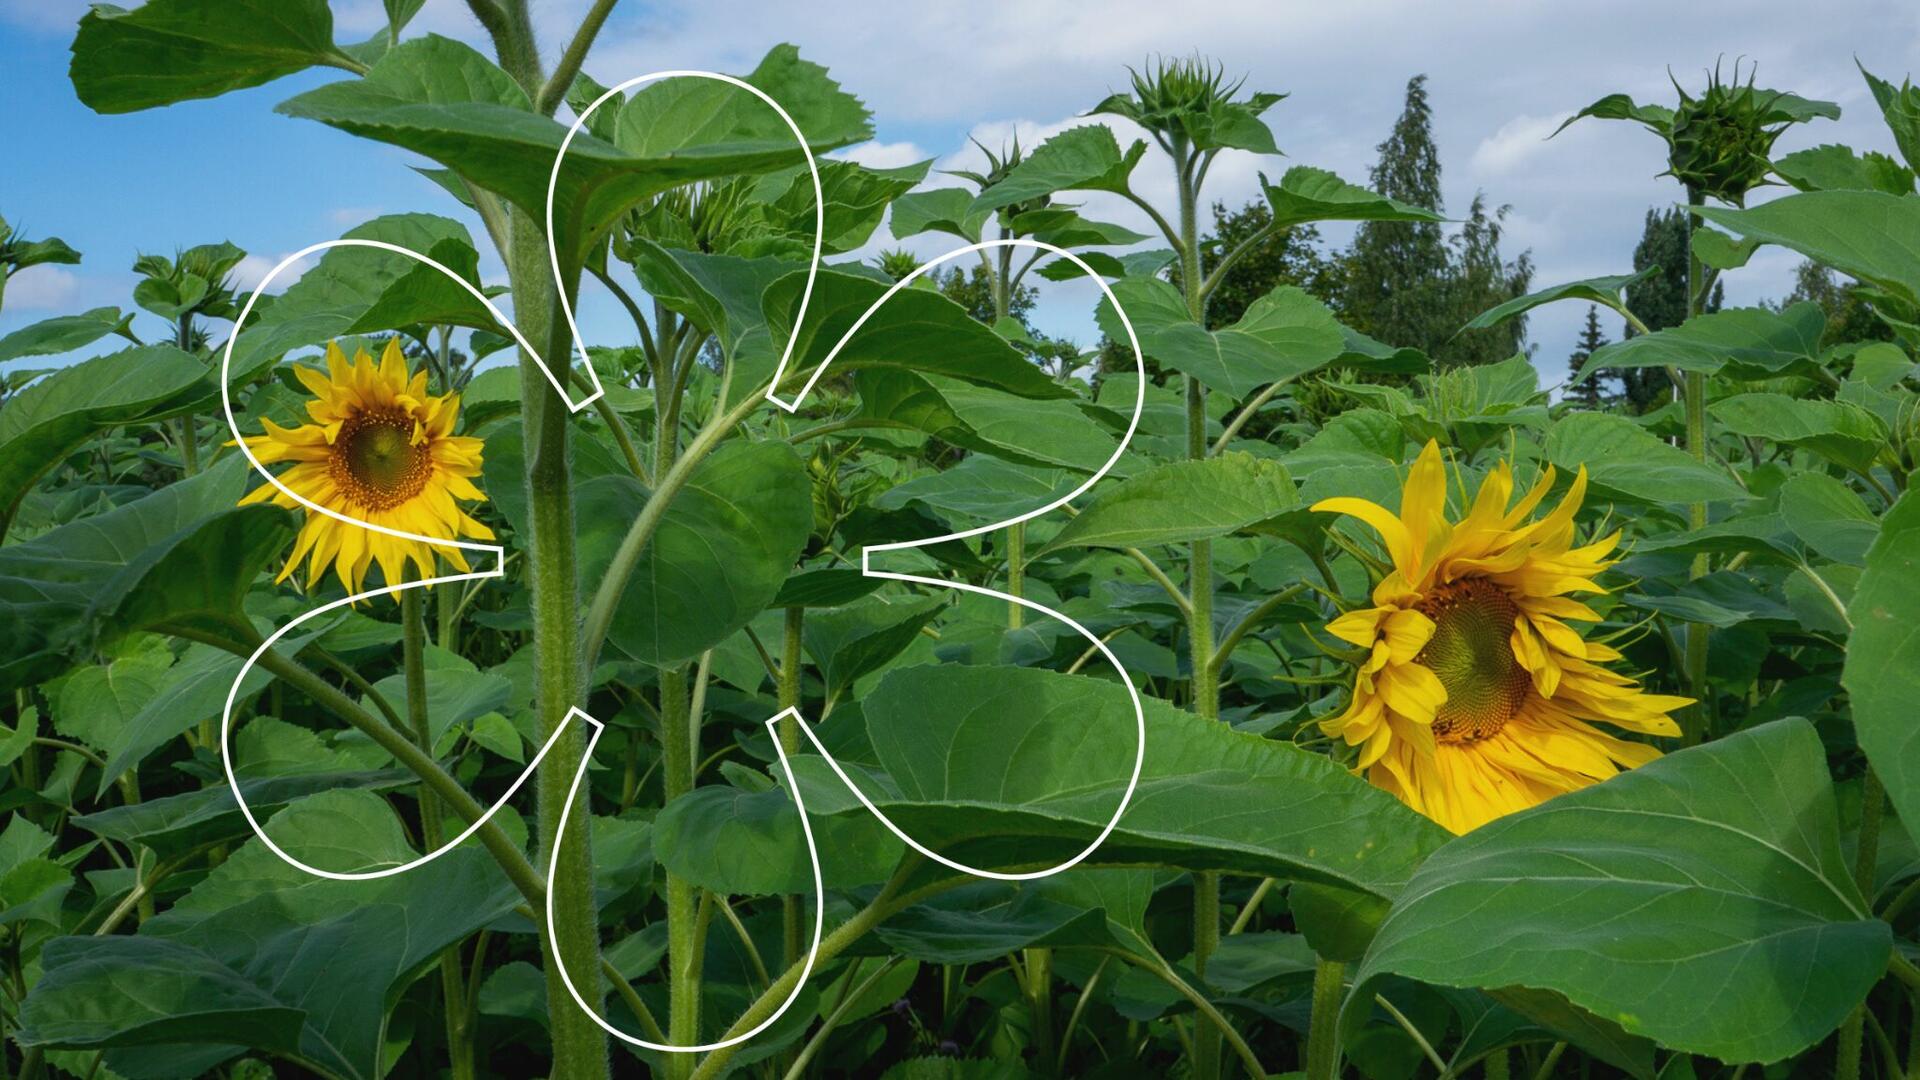 Auringonkukkapellolla on jo puhjennut kukkaan kaksi auringonkukkaa. Kuvan päällä Onnellinen aurinko -elementti.